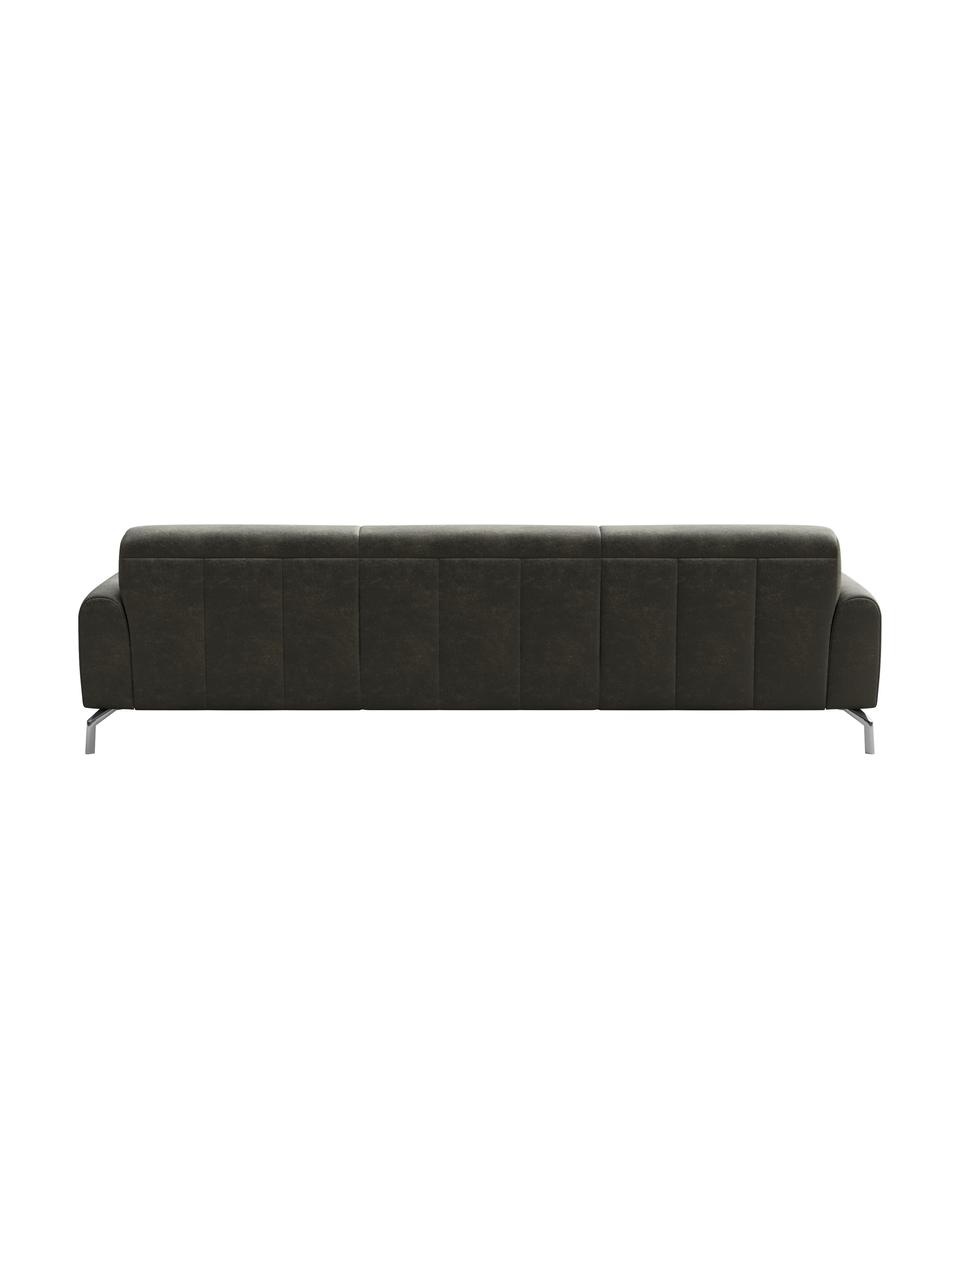 Sofa z imitacją skóry Puzo (3-osobowa), Tapicerka: 100% poliester imitujący , Nogi: metal lakierowany, Szary, S 240 x G 84 cm